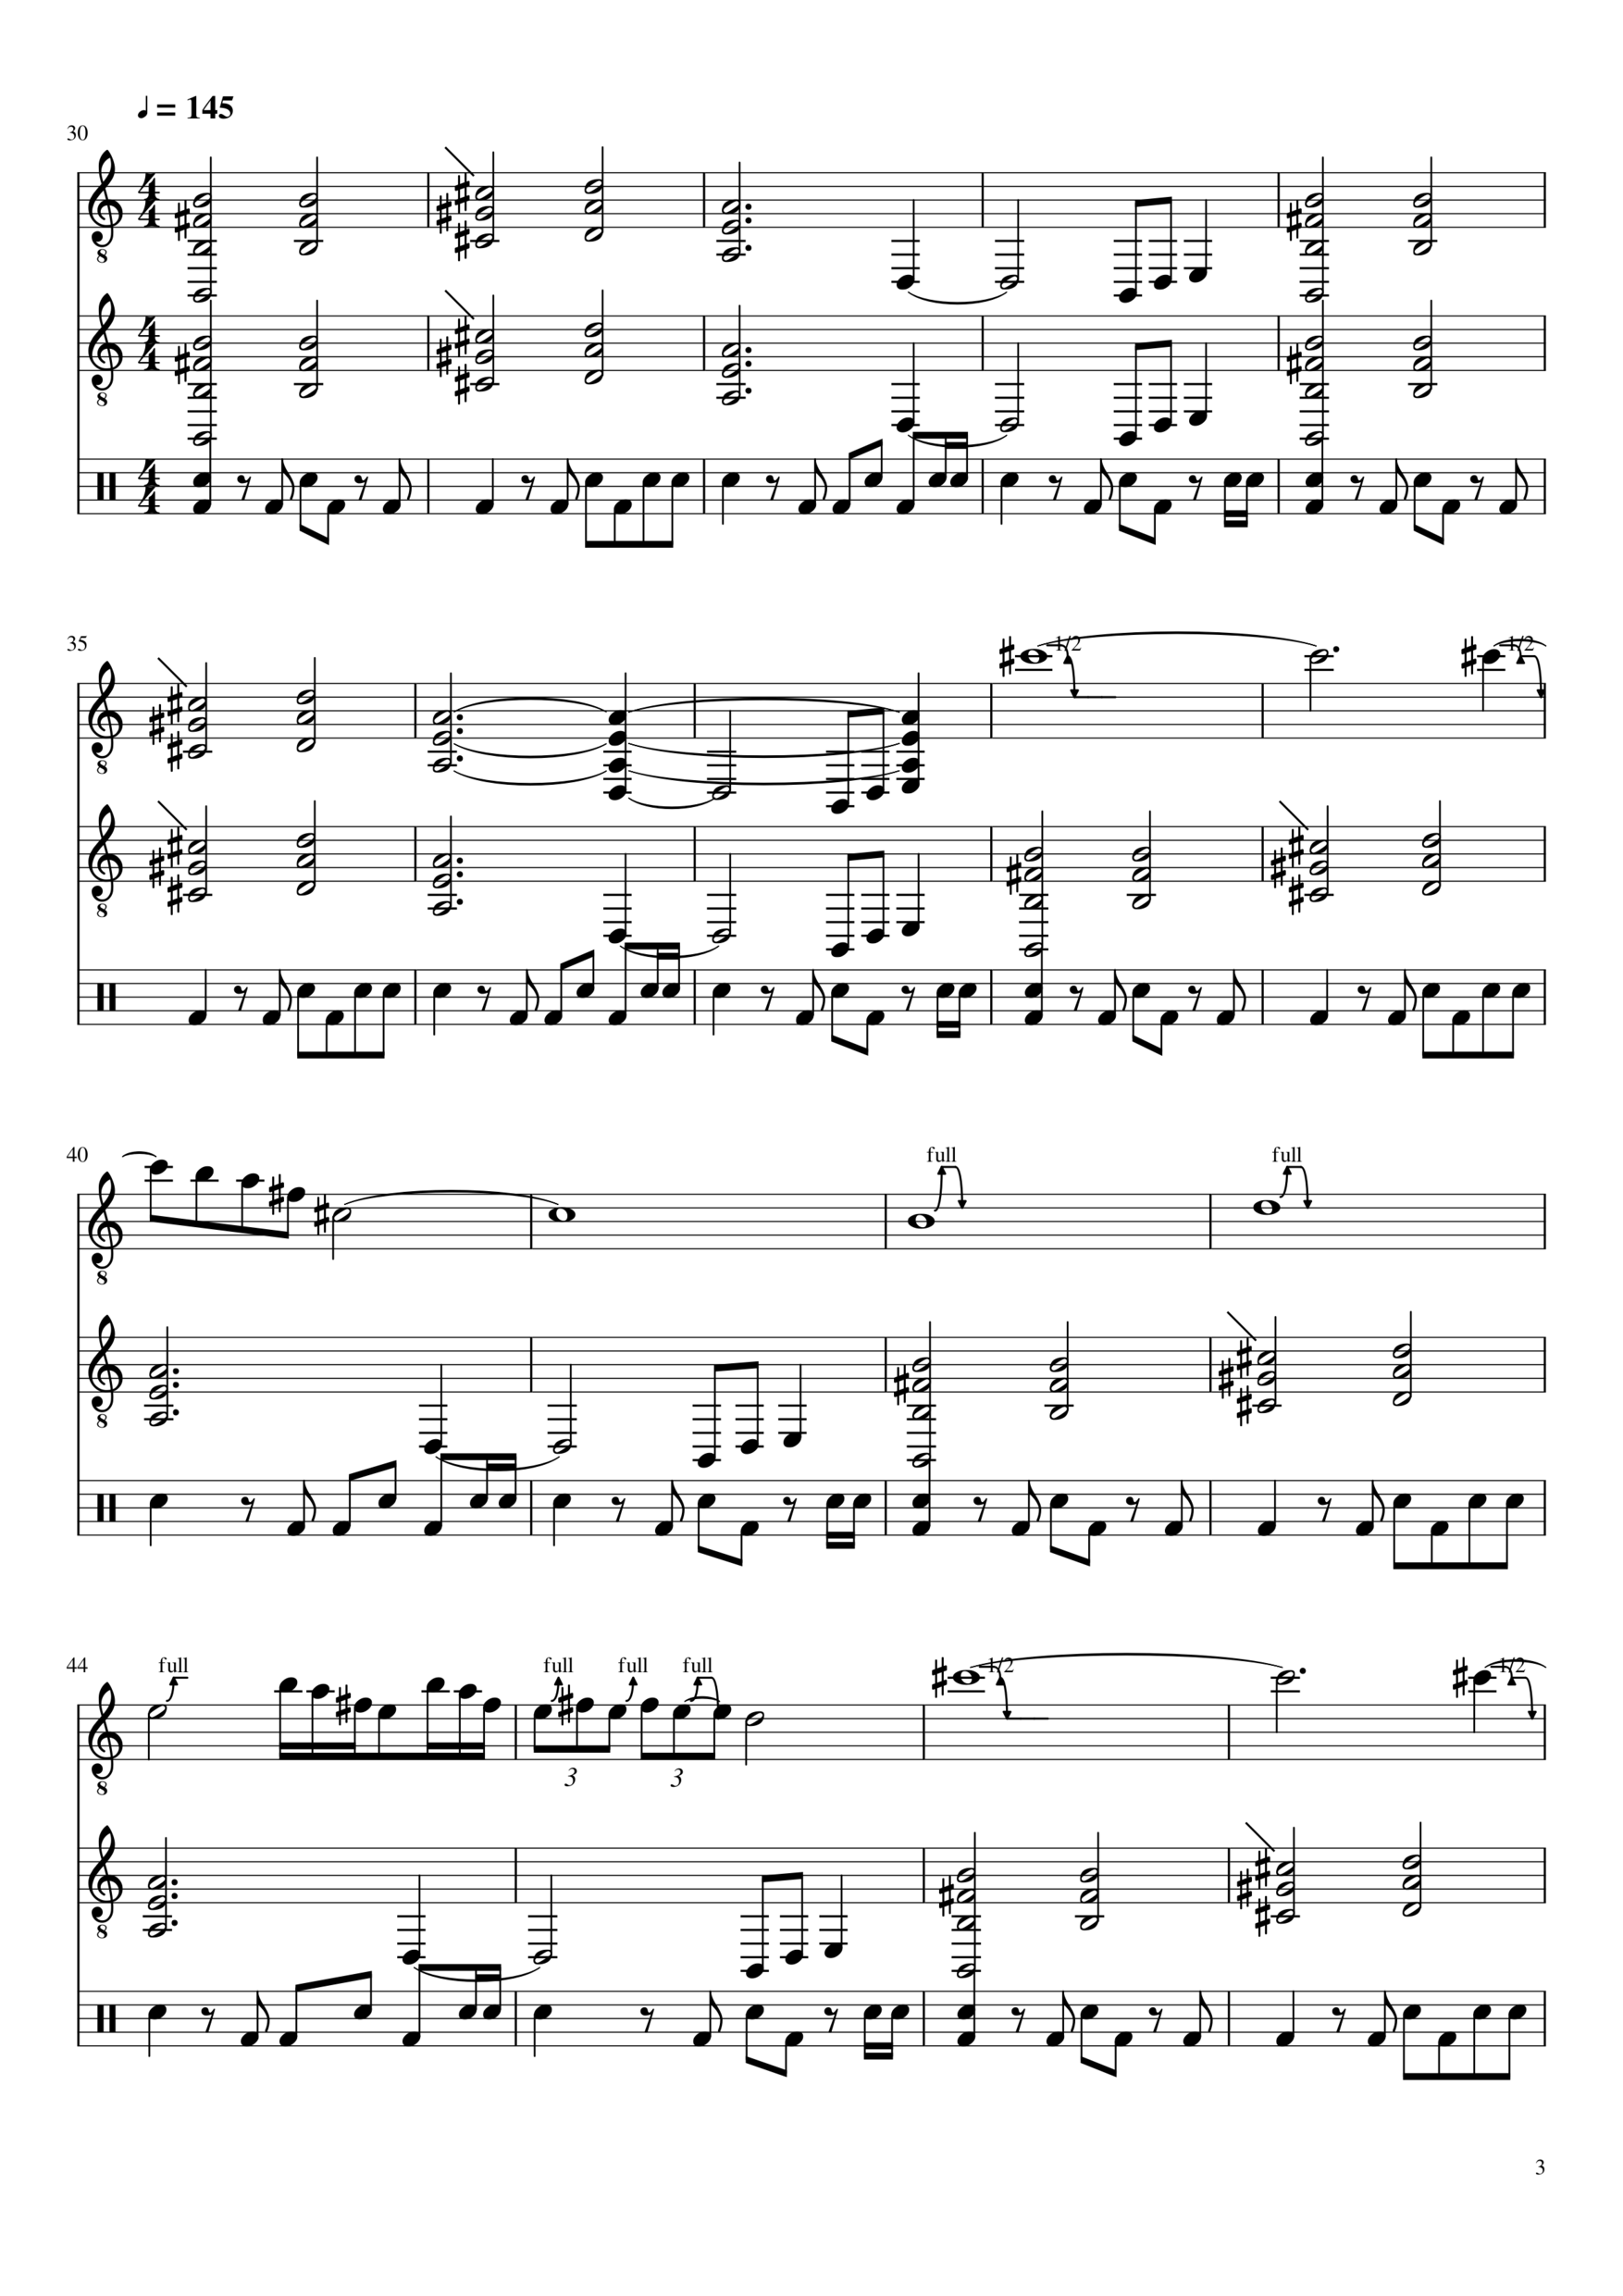 Vechnaya lyubov slide, Image 2